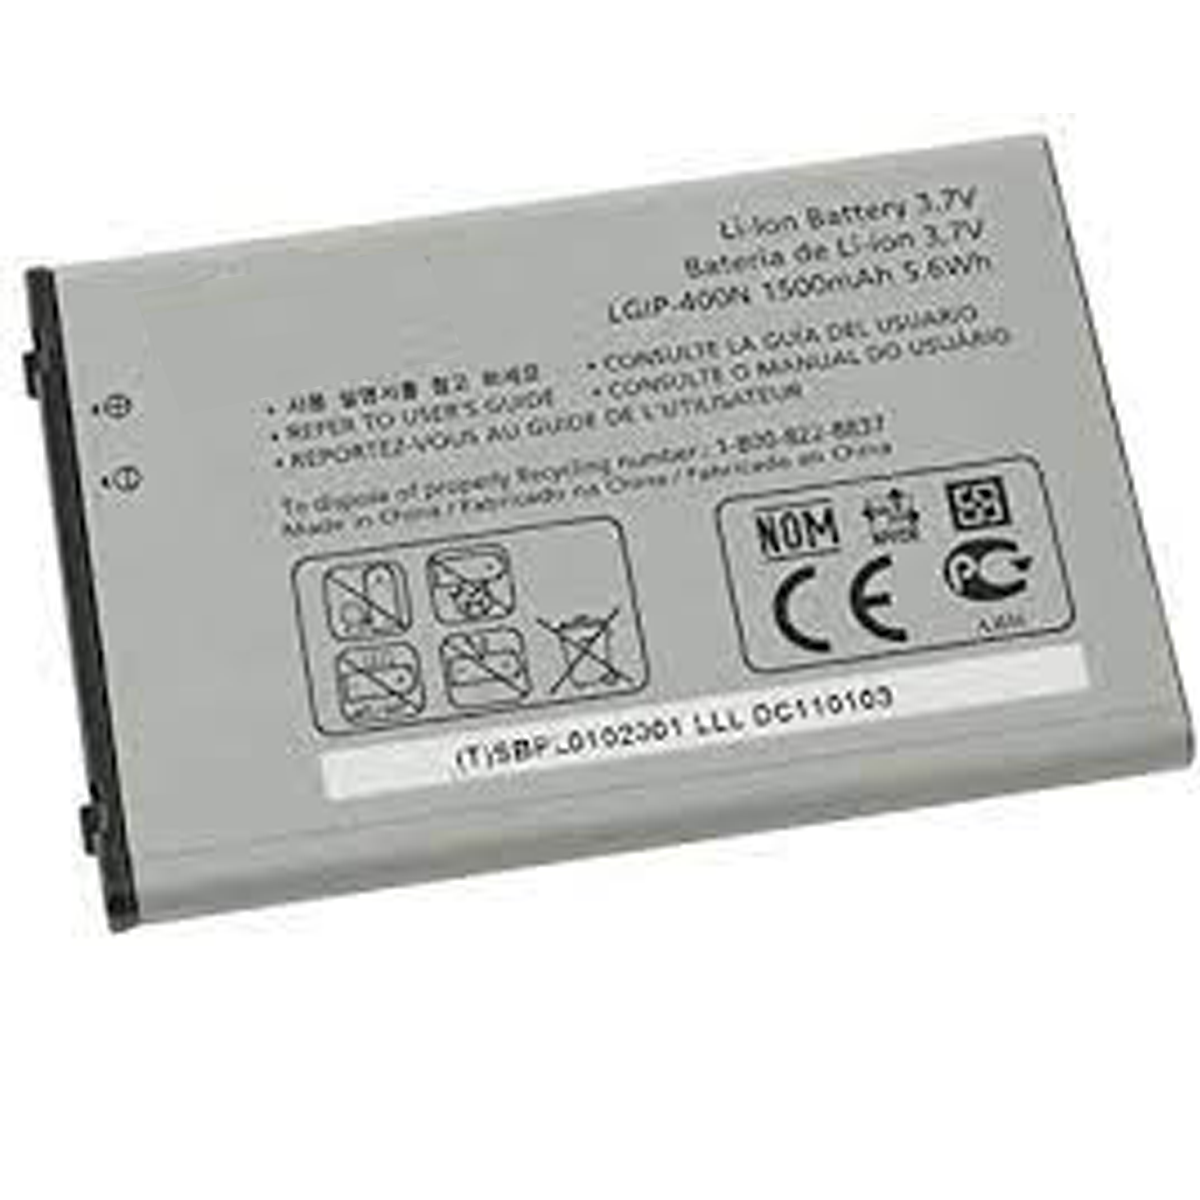 Bateria Para LG KF900 Prada 2, GW520, KS500, KS660, KT770 LGIP-340N